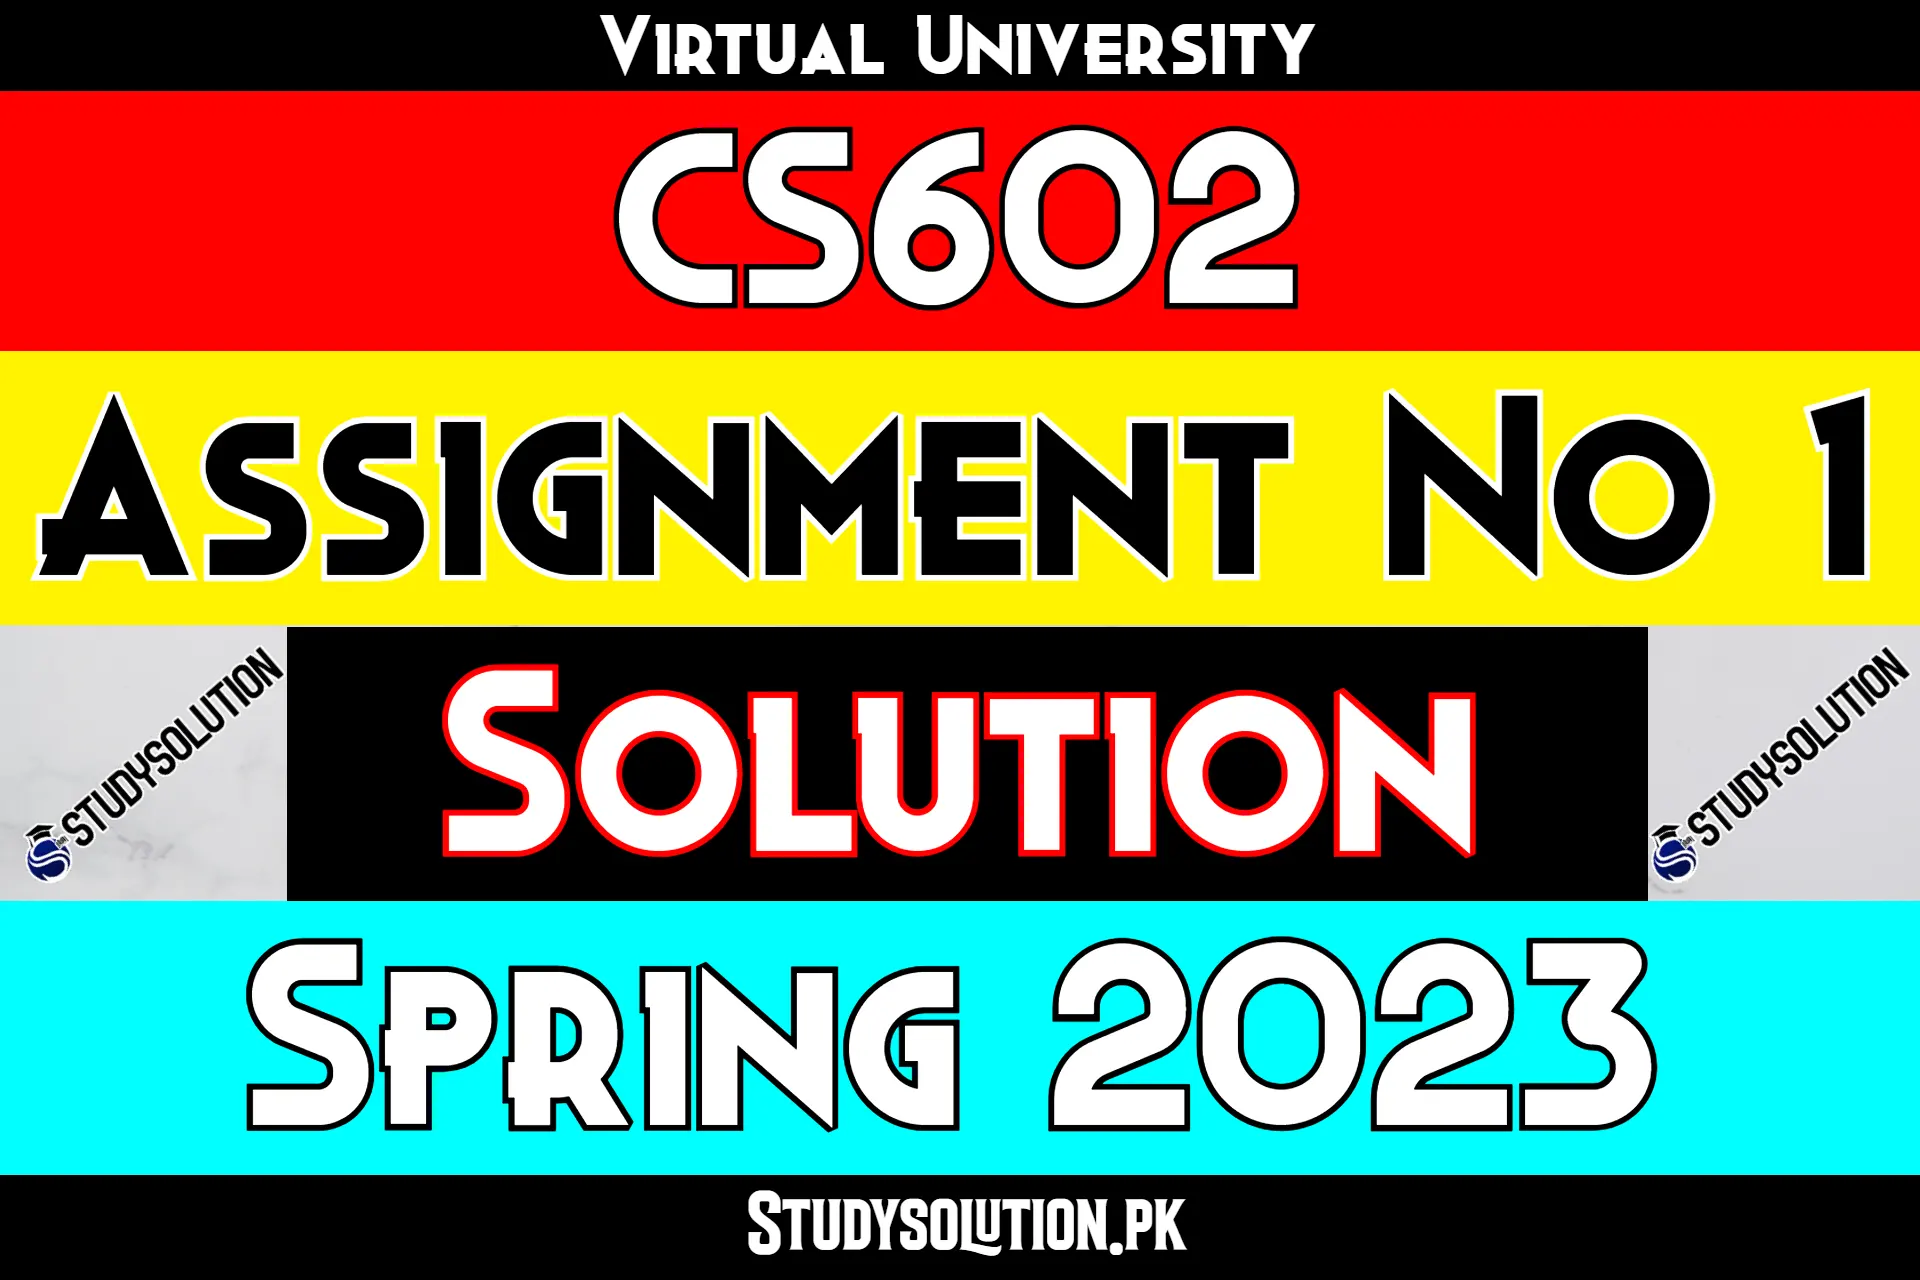 CS602 Assignment No 1 Solution Spring 2023